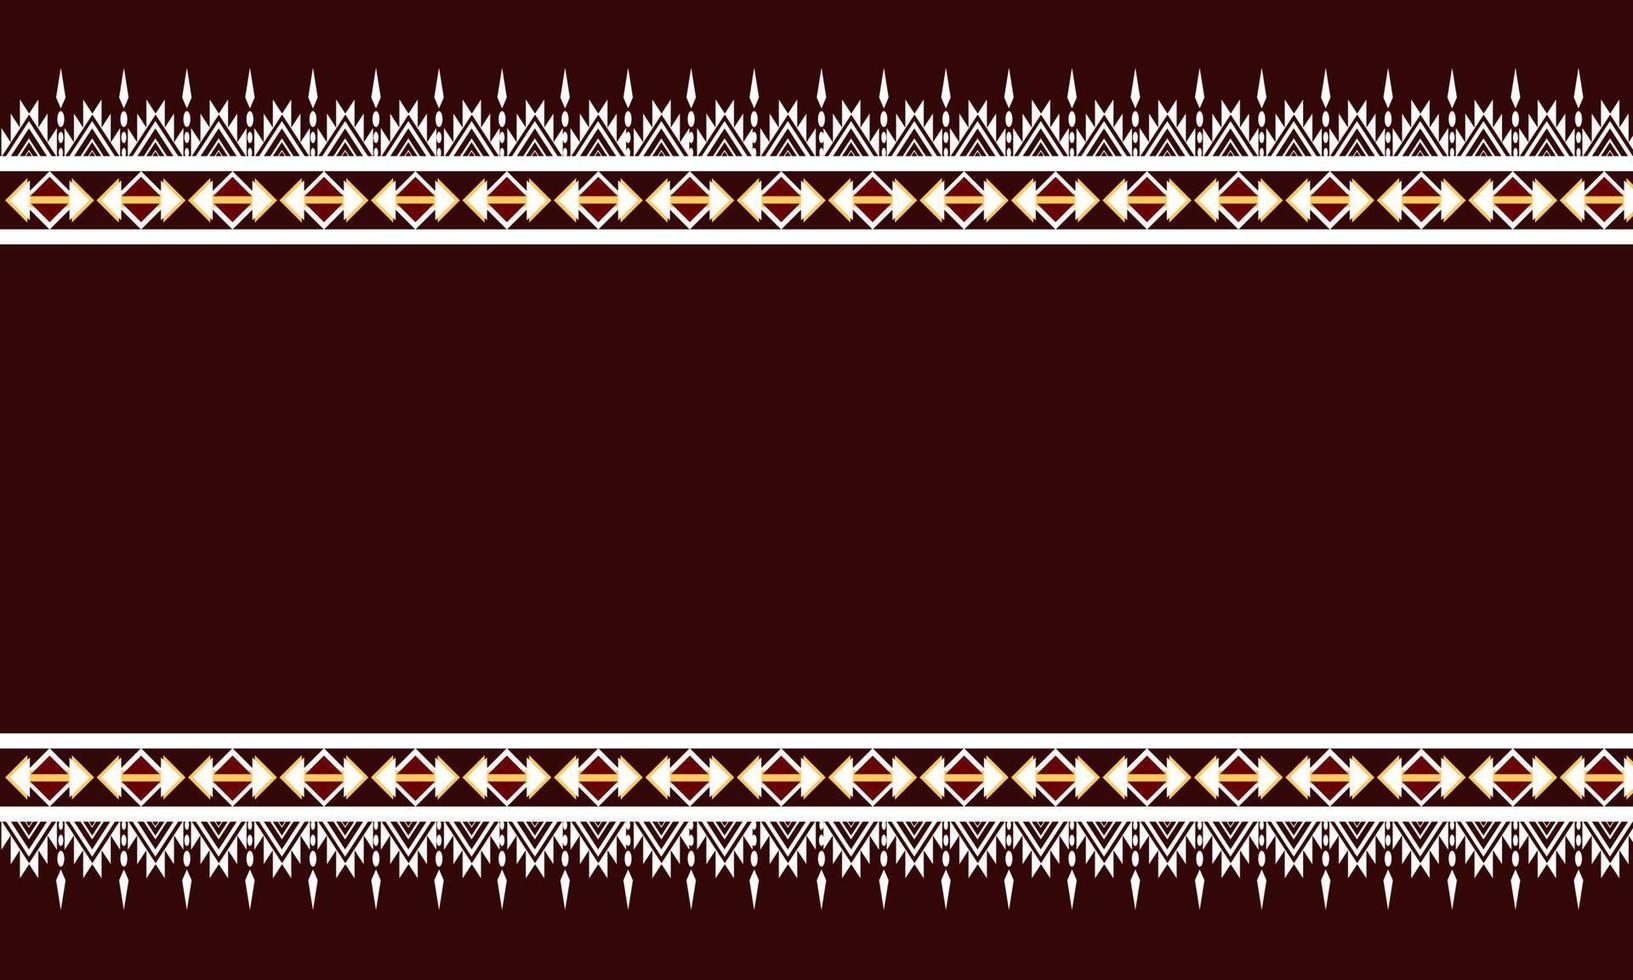 abstracte etnische ikat chevron patroon achtergrond. ,tapijt,behang,kleding,inwikkeling,batik,stof,borduurstijl. vector